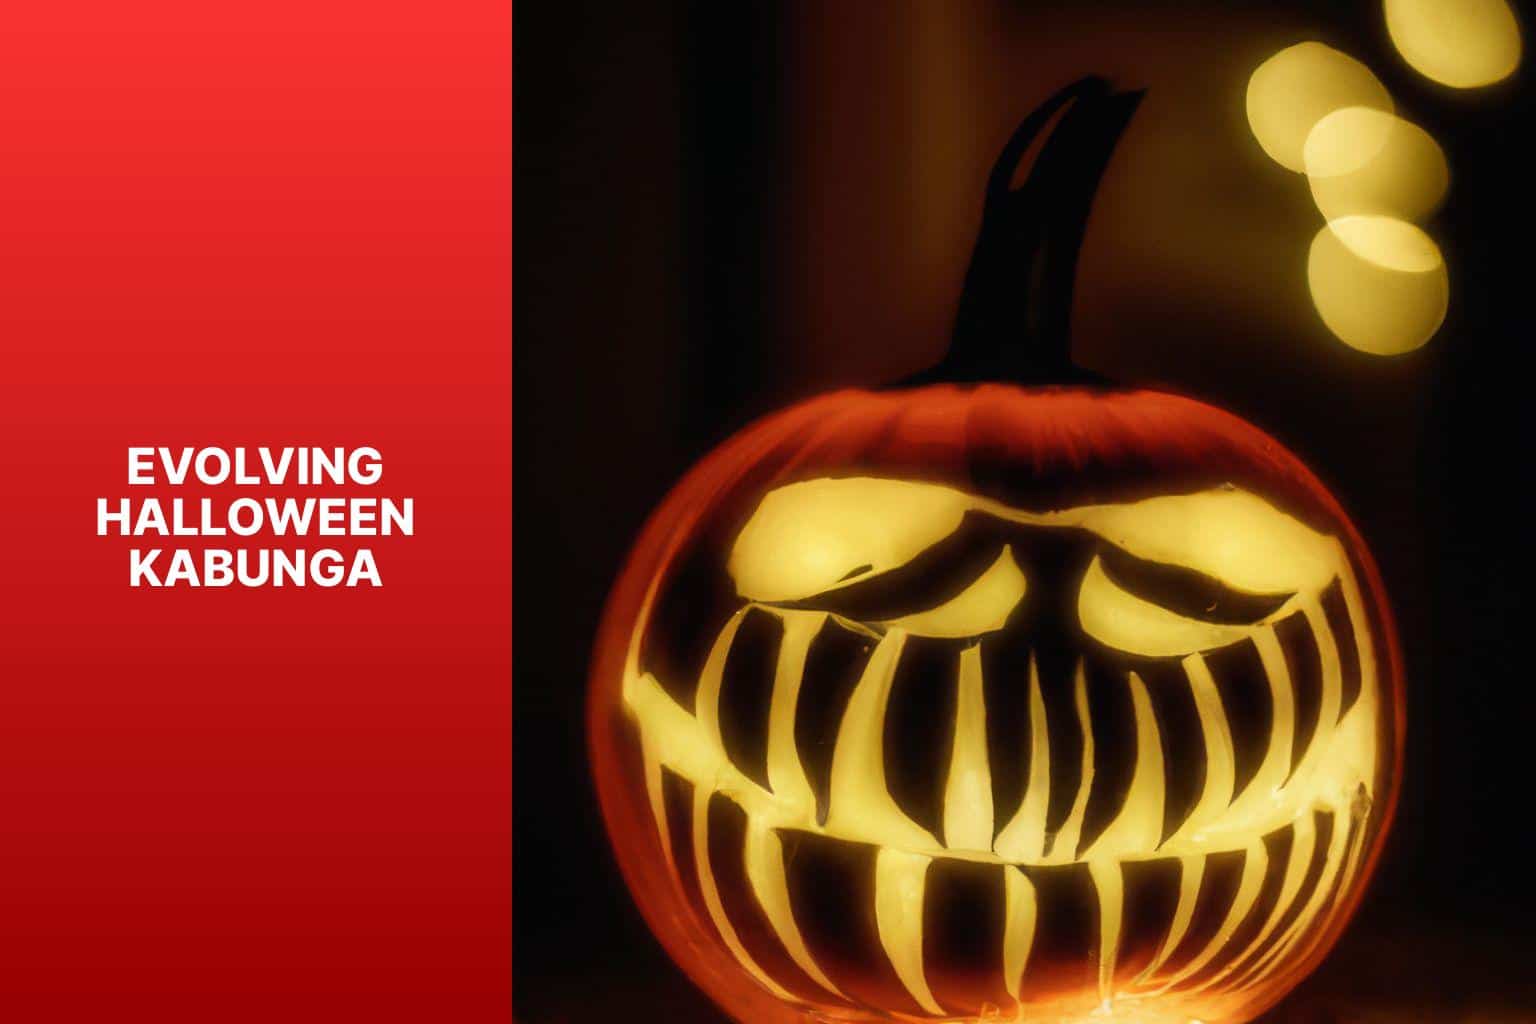 Evolving Halloween Kabunga - can halloween kabunga evolve 